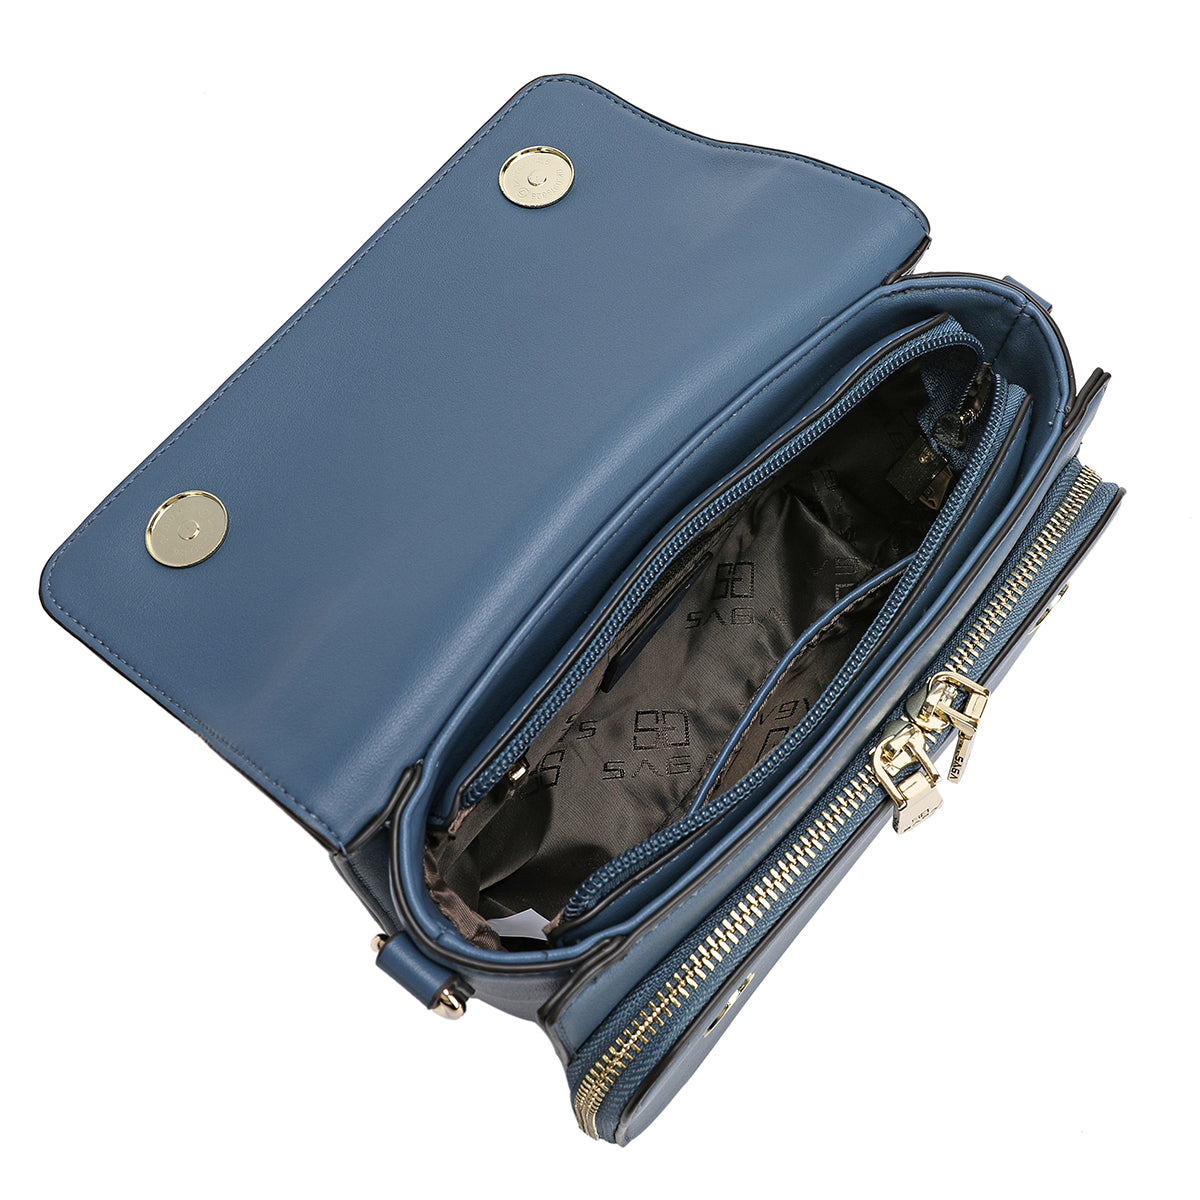 حقيبة يد نسائية بحزام قابل للفصل من ساغا عرض 20.5سم تتوفر بلونين